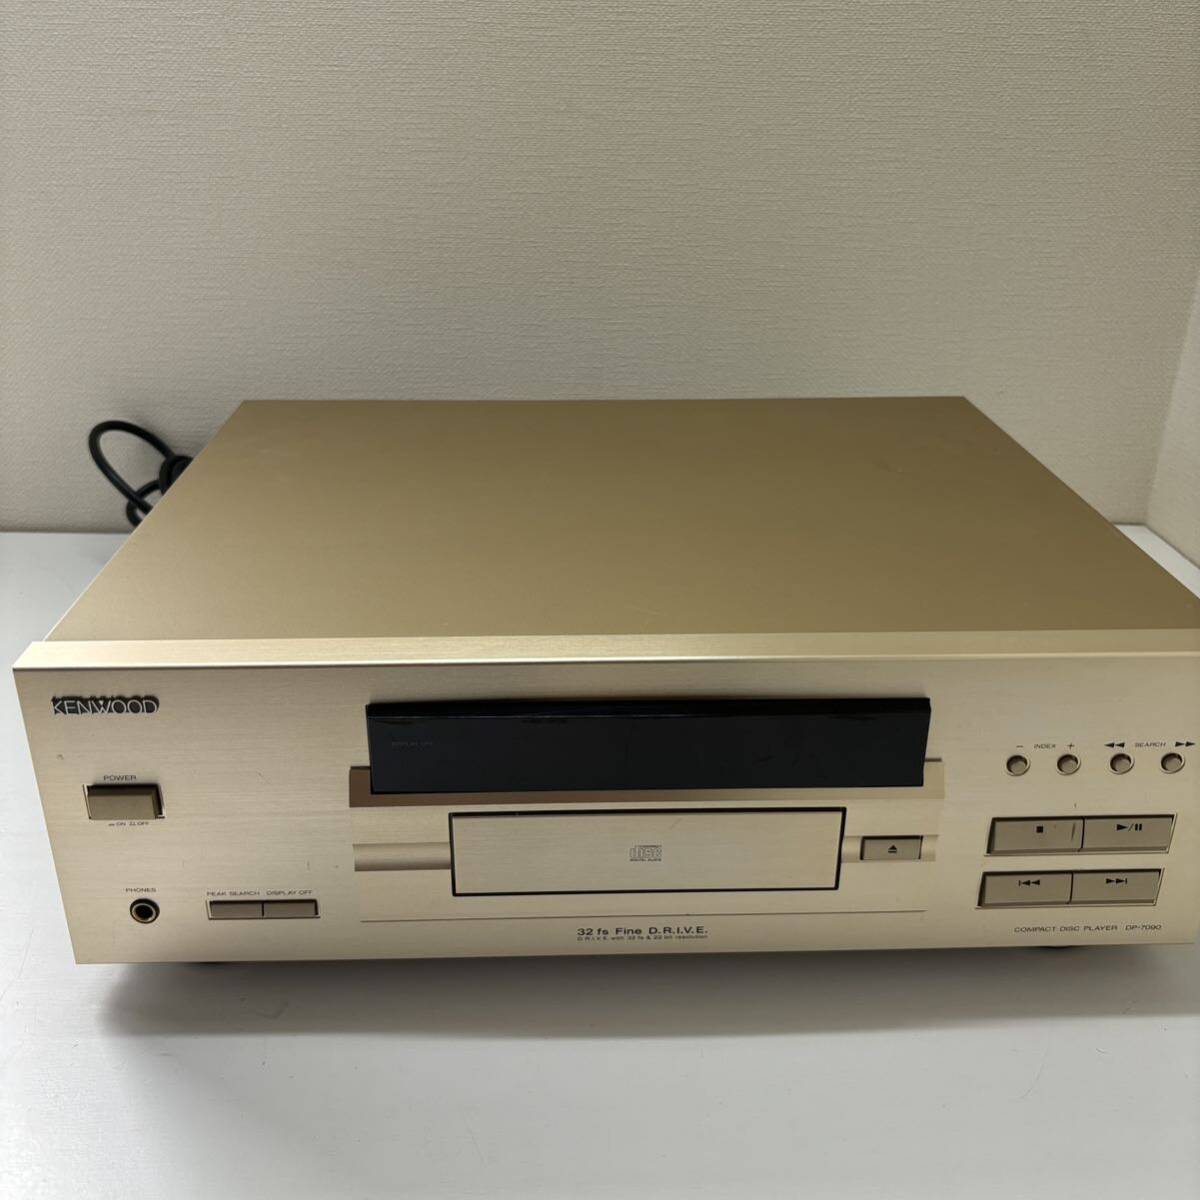 KENWOOD CD player DP-7090 compact design 22 bit D/A conversion height resolution digital filter optical digital output installing junk 